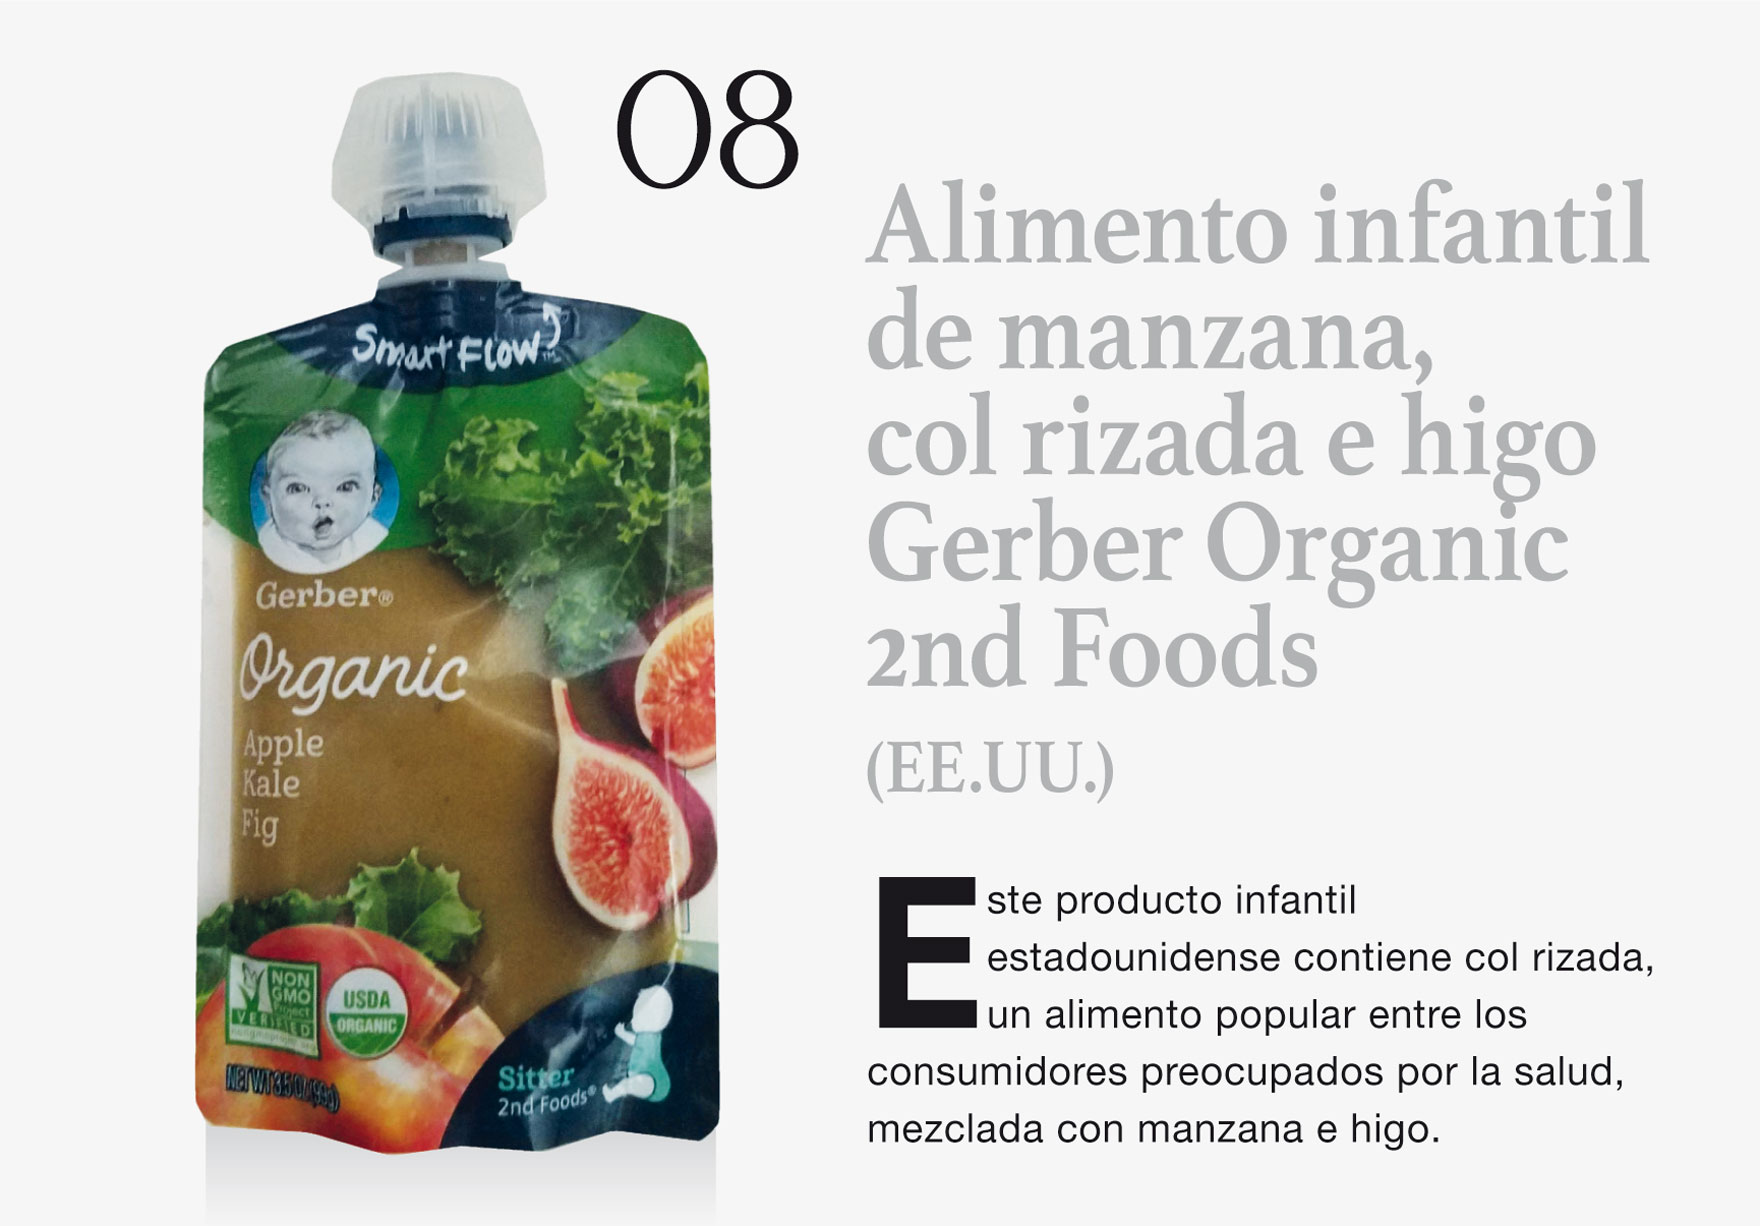 Alimento infantil de manzana, col rizada e higo Gerber Organic 2nd Foods